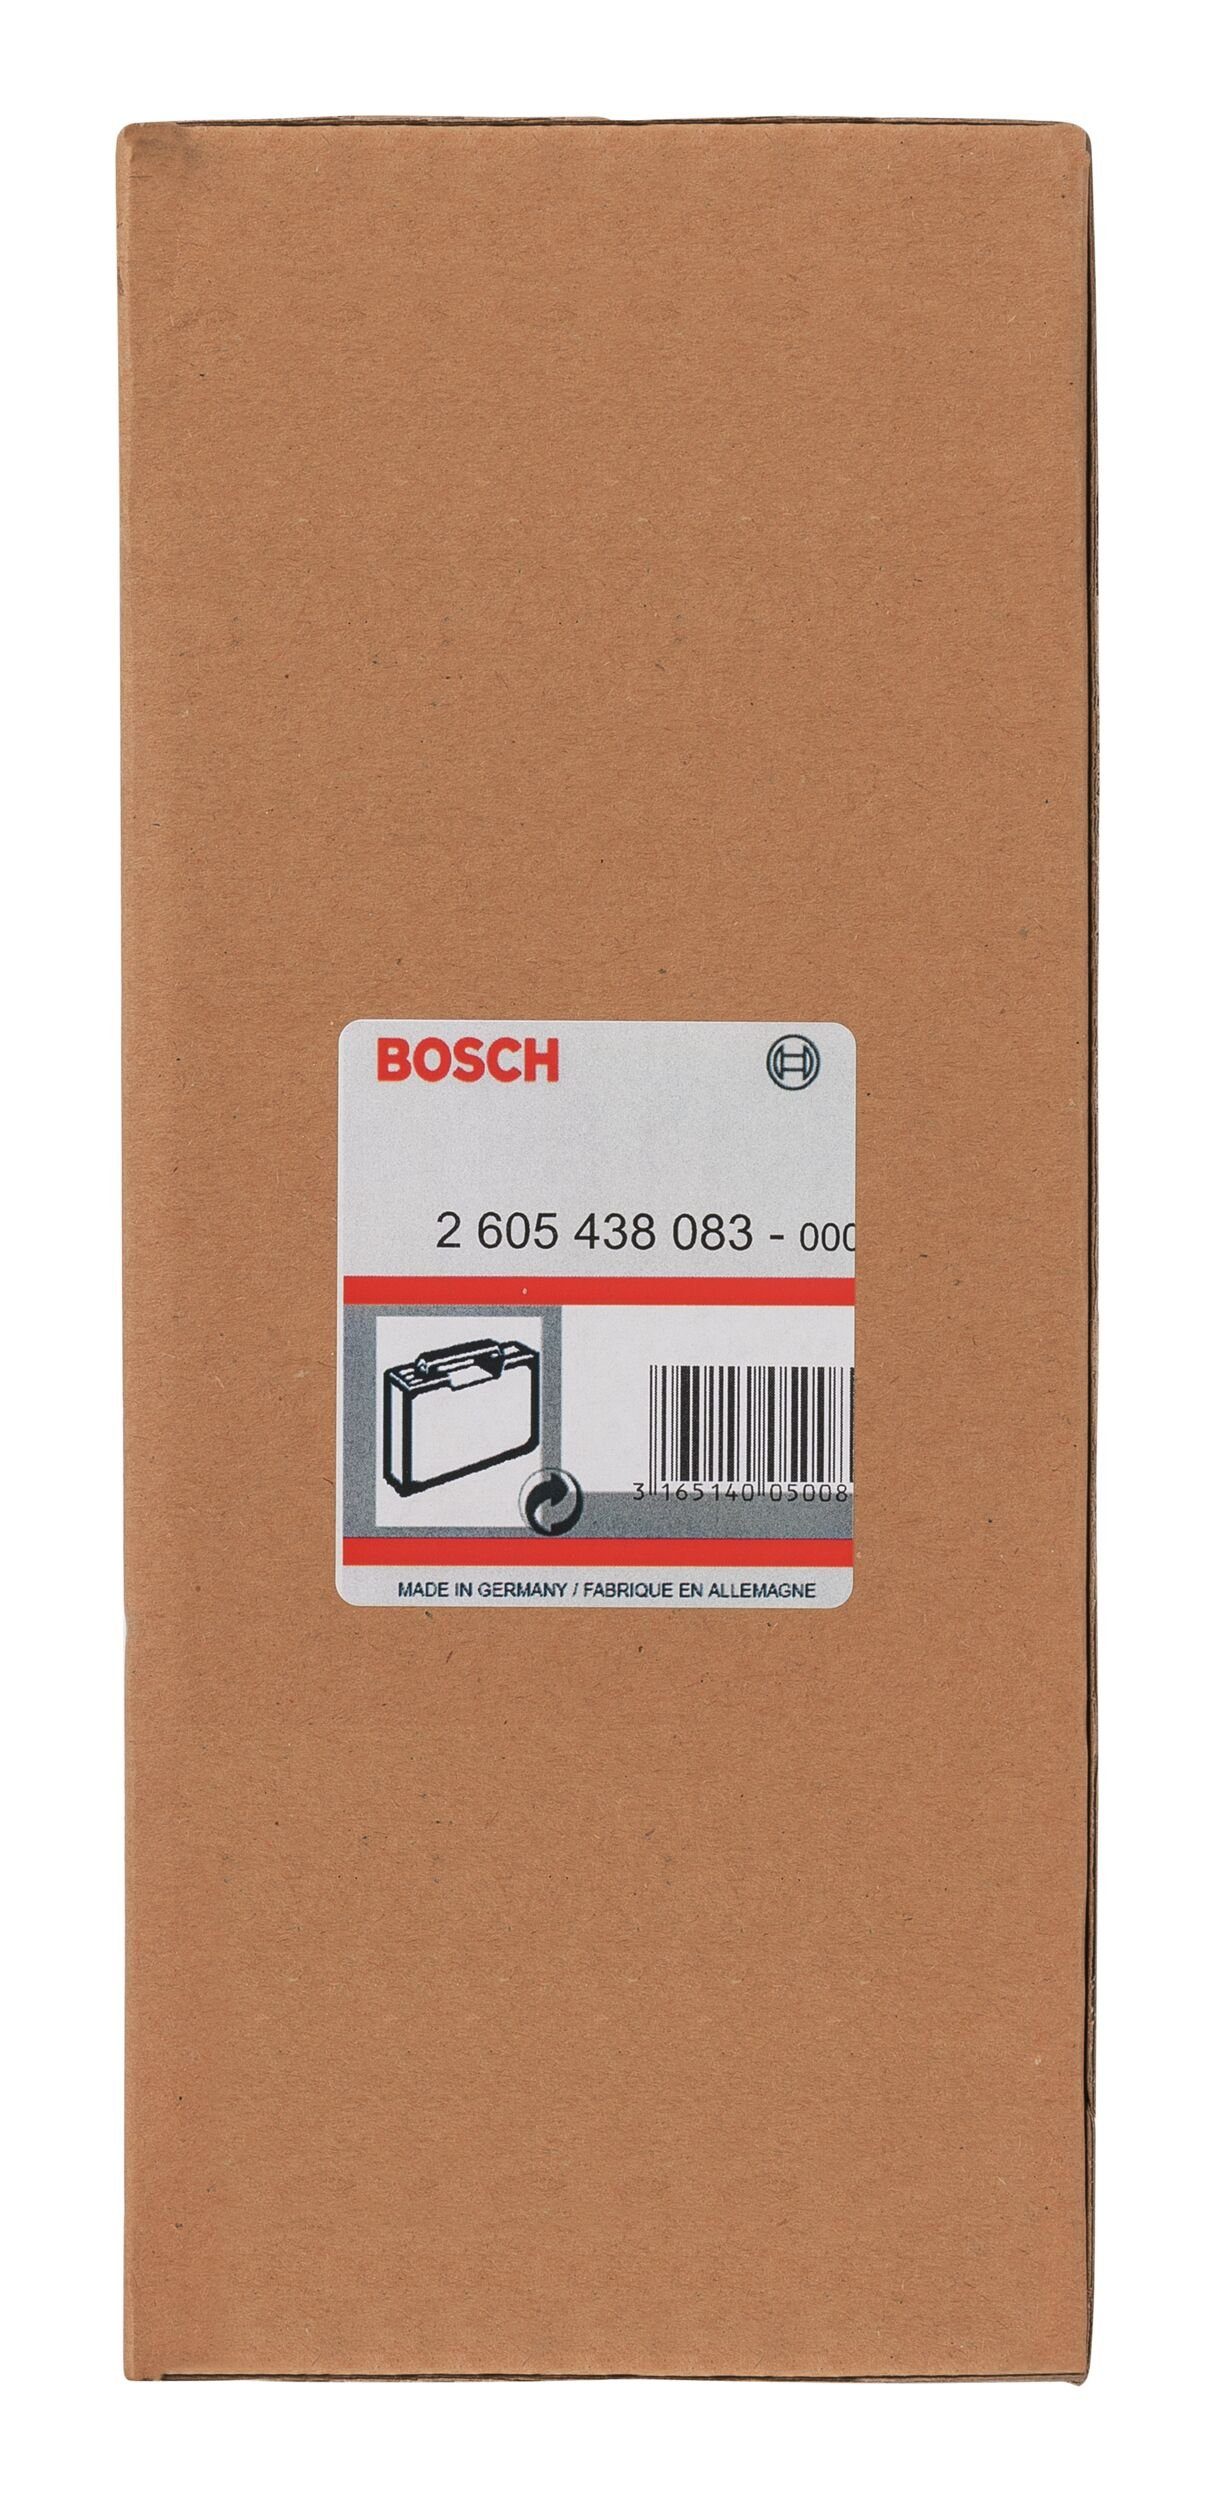 Bosch Home & Garden 100 mm Metallkoffer x 380 x 240 Werkzeugkoffer, 